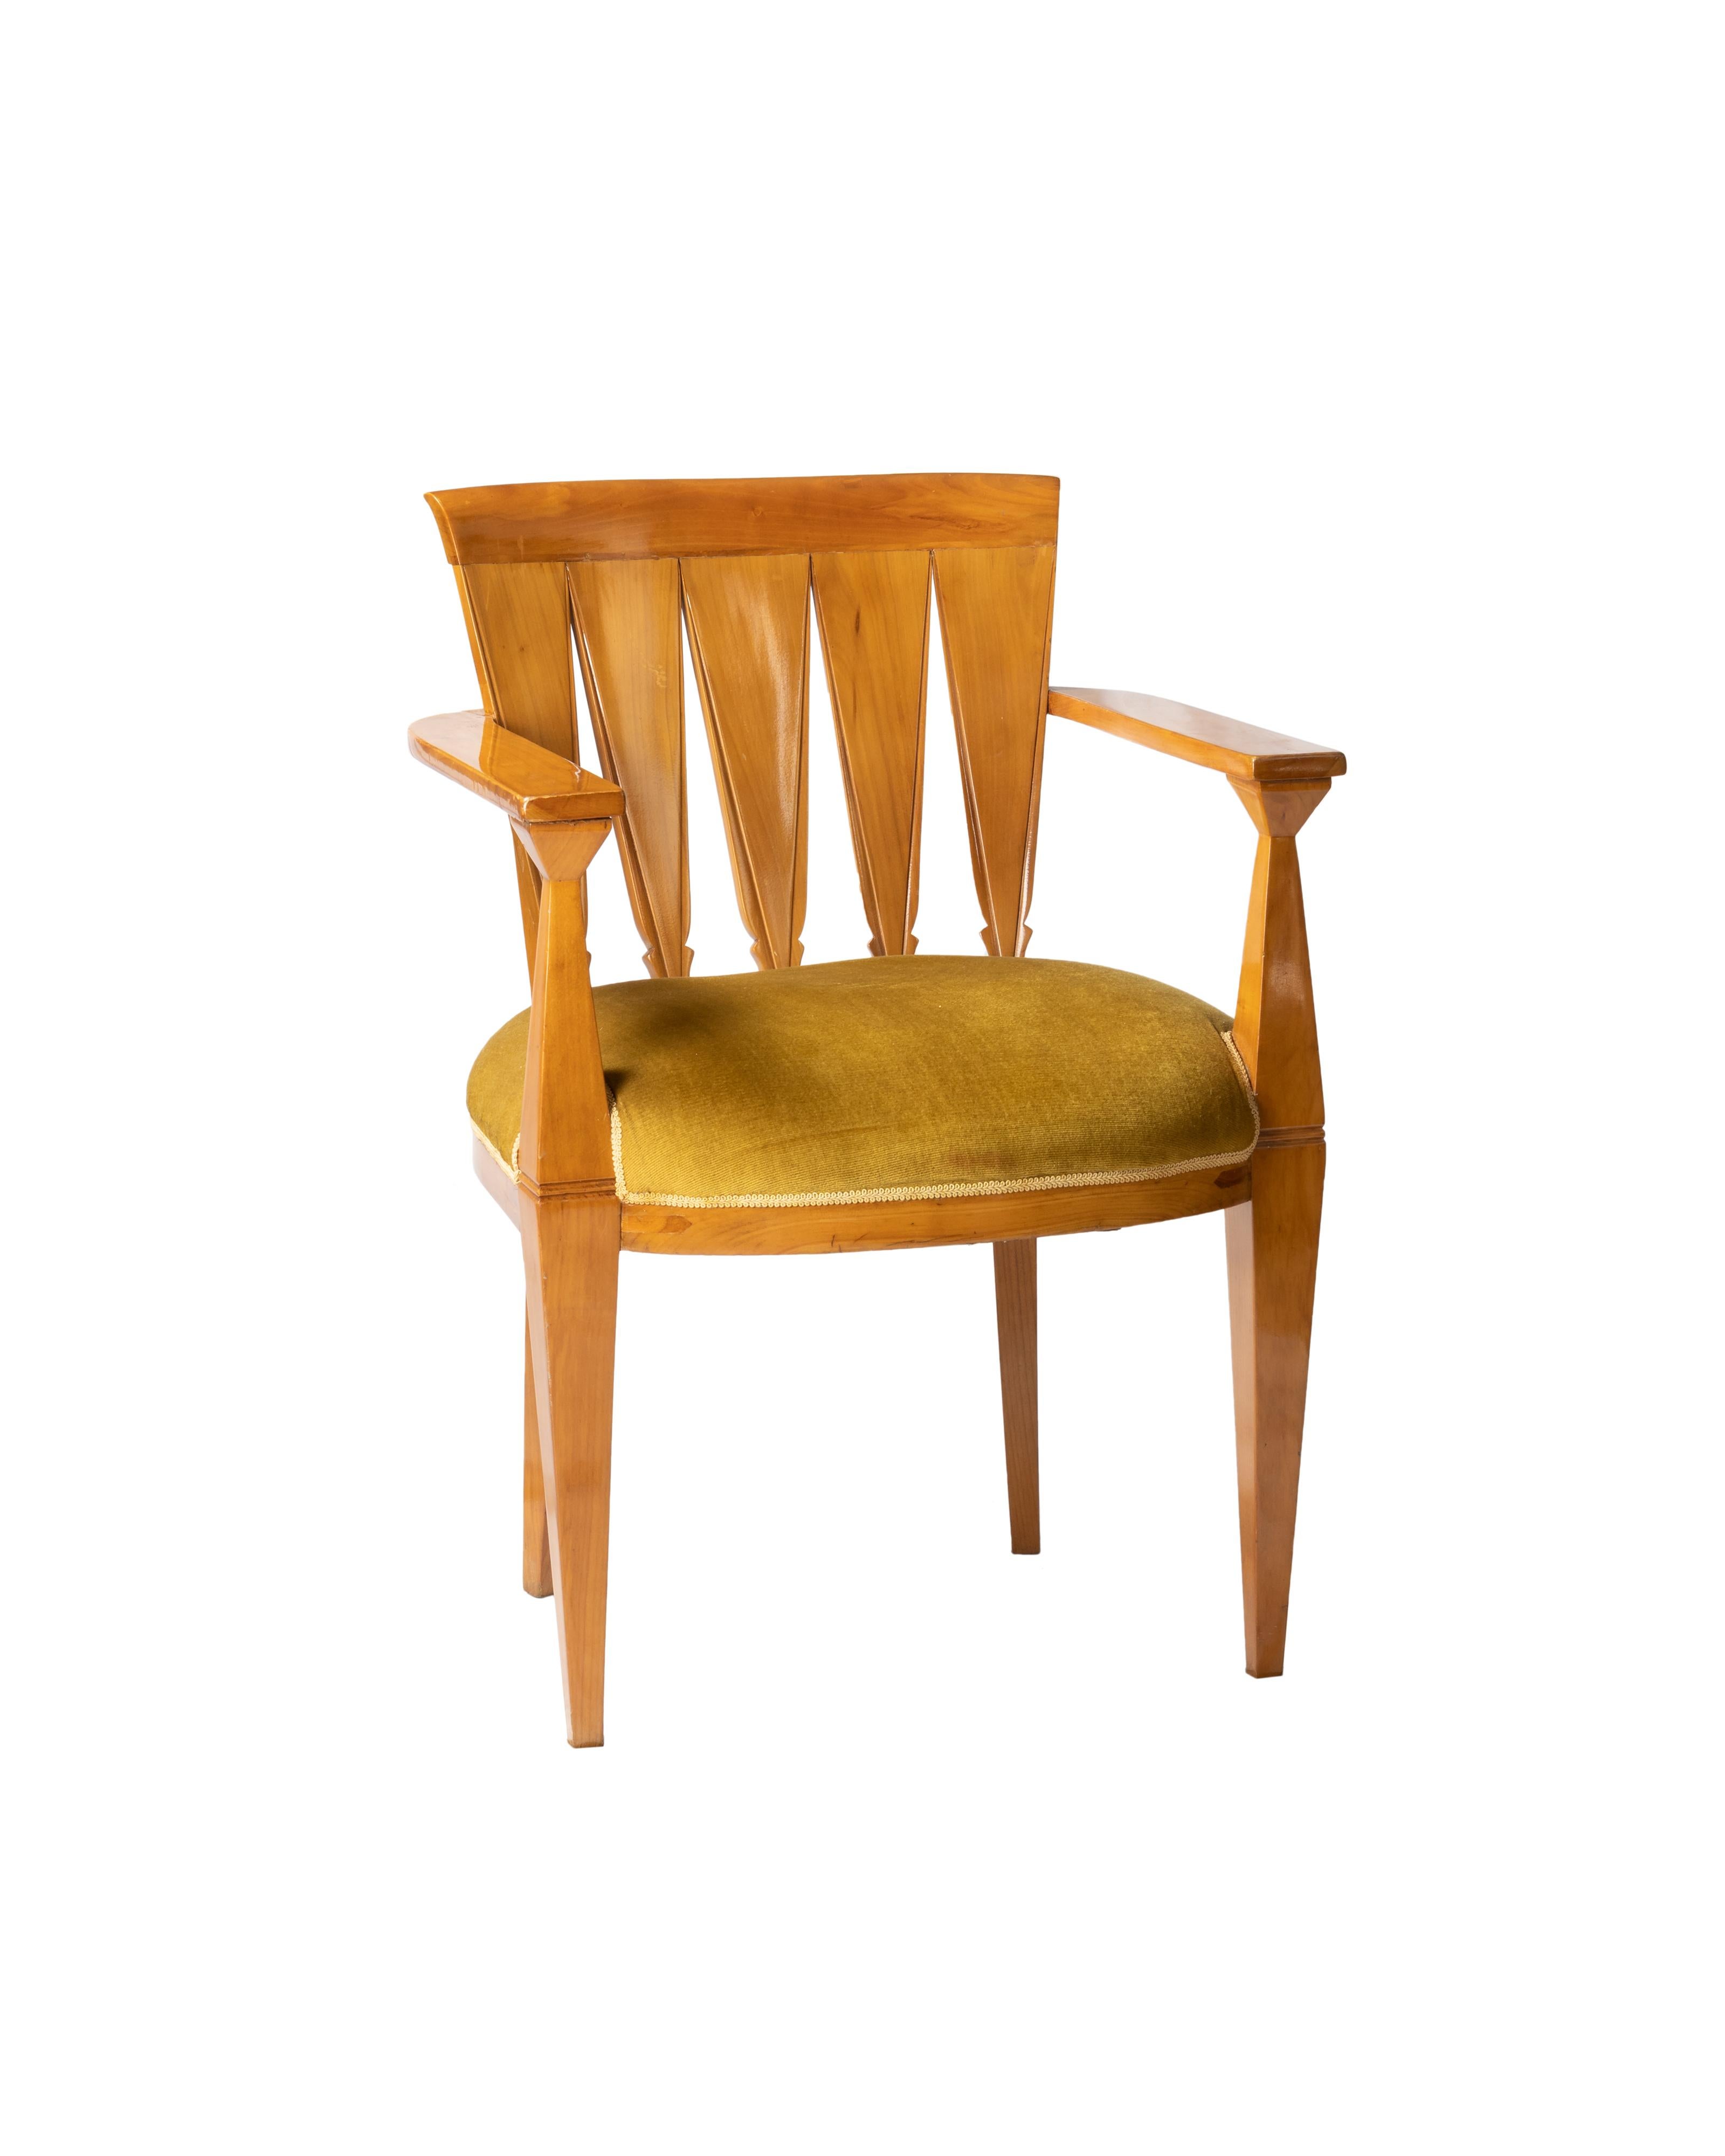 Art Deco Sessel mit hölzerner Rückenlehne, Armlehnen und breiter Sitzfläche, senffarben gepolstert.